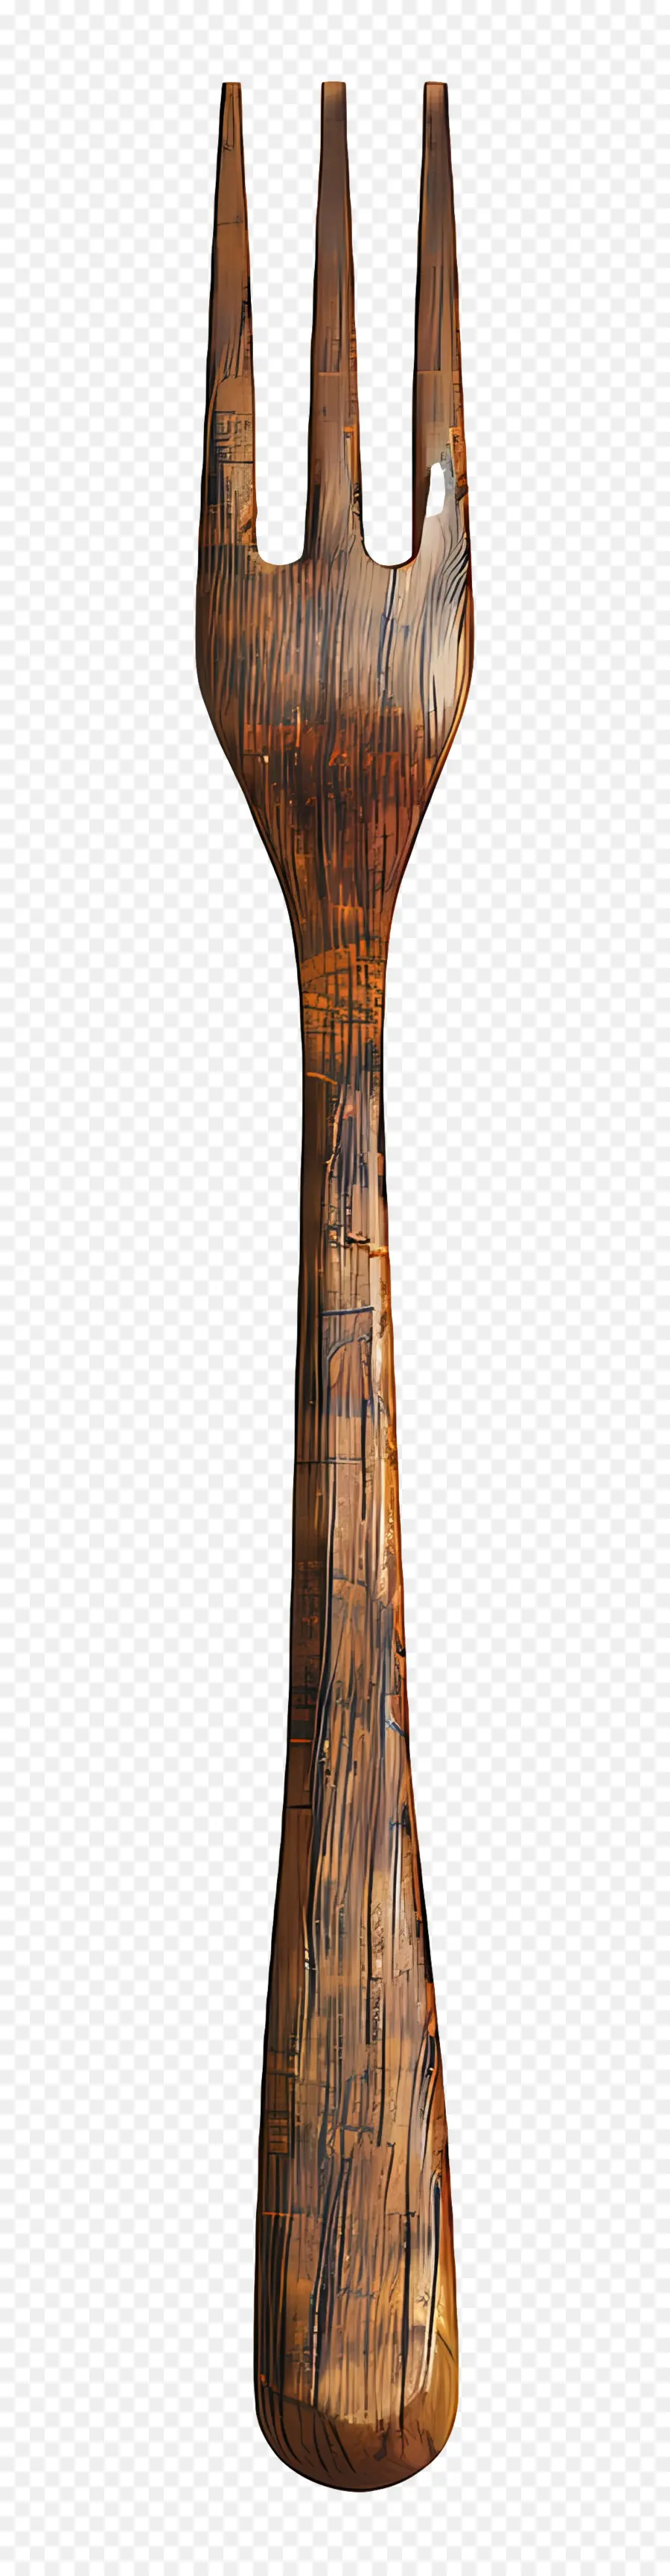 wooden fork wooden figure animal bird sculpture